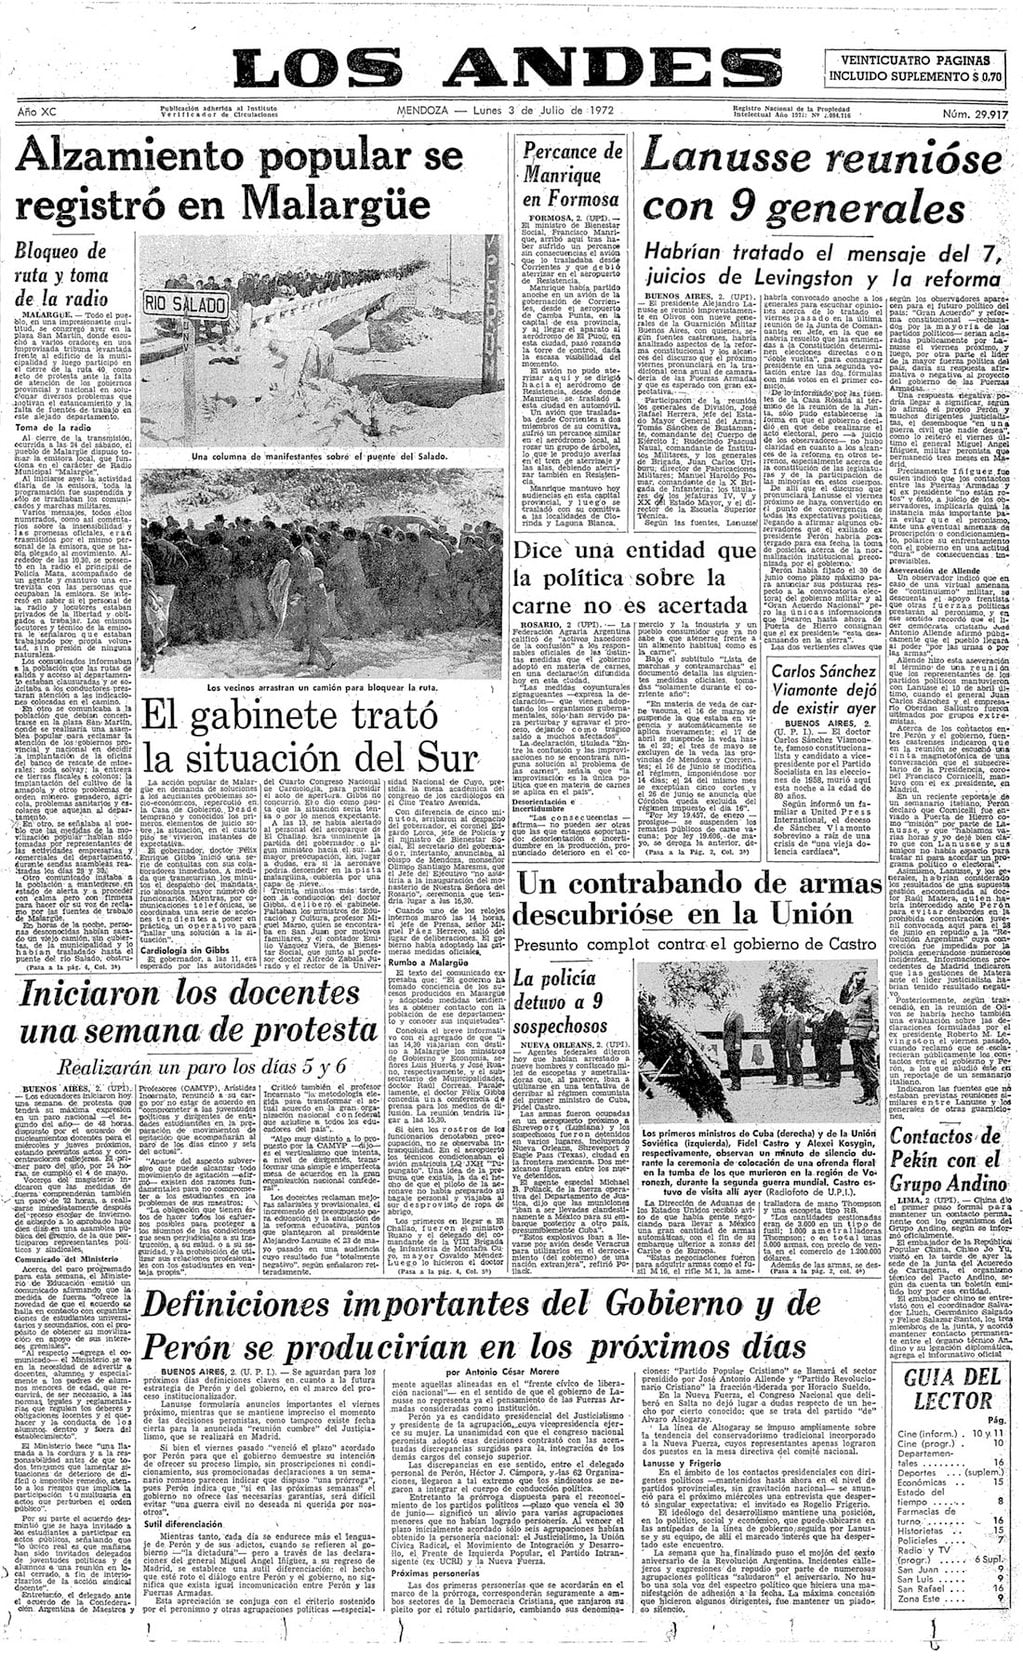 Alzamiento popular se registró en Malargüe: así titulaba la edición de Los Andes del 3 de julio de 1972 los acontecimientos en el Sur. 